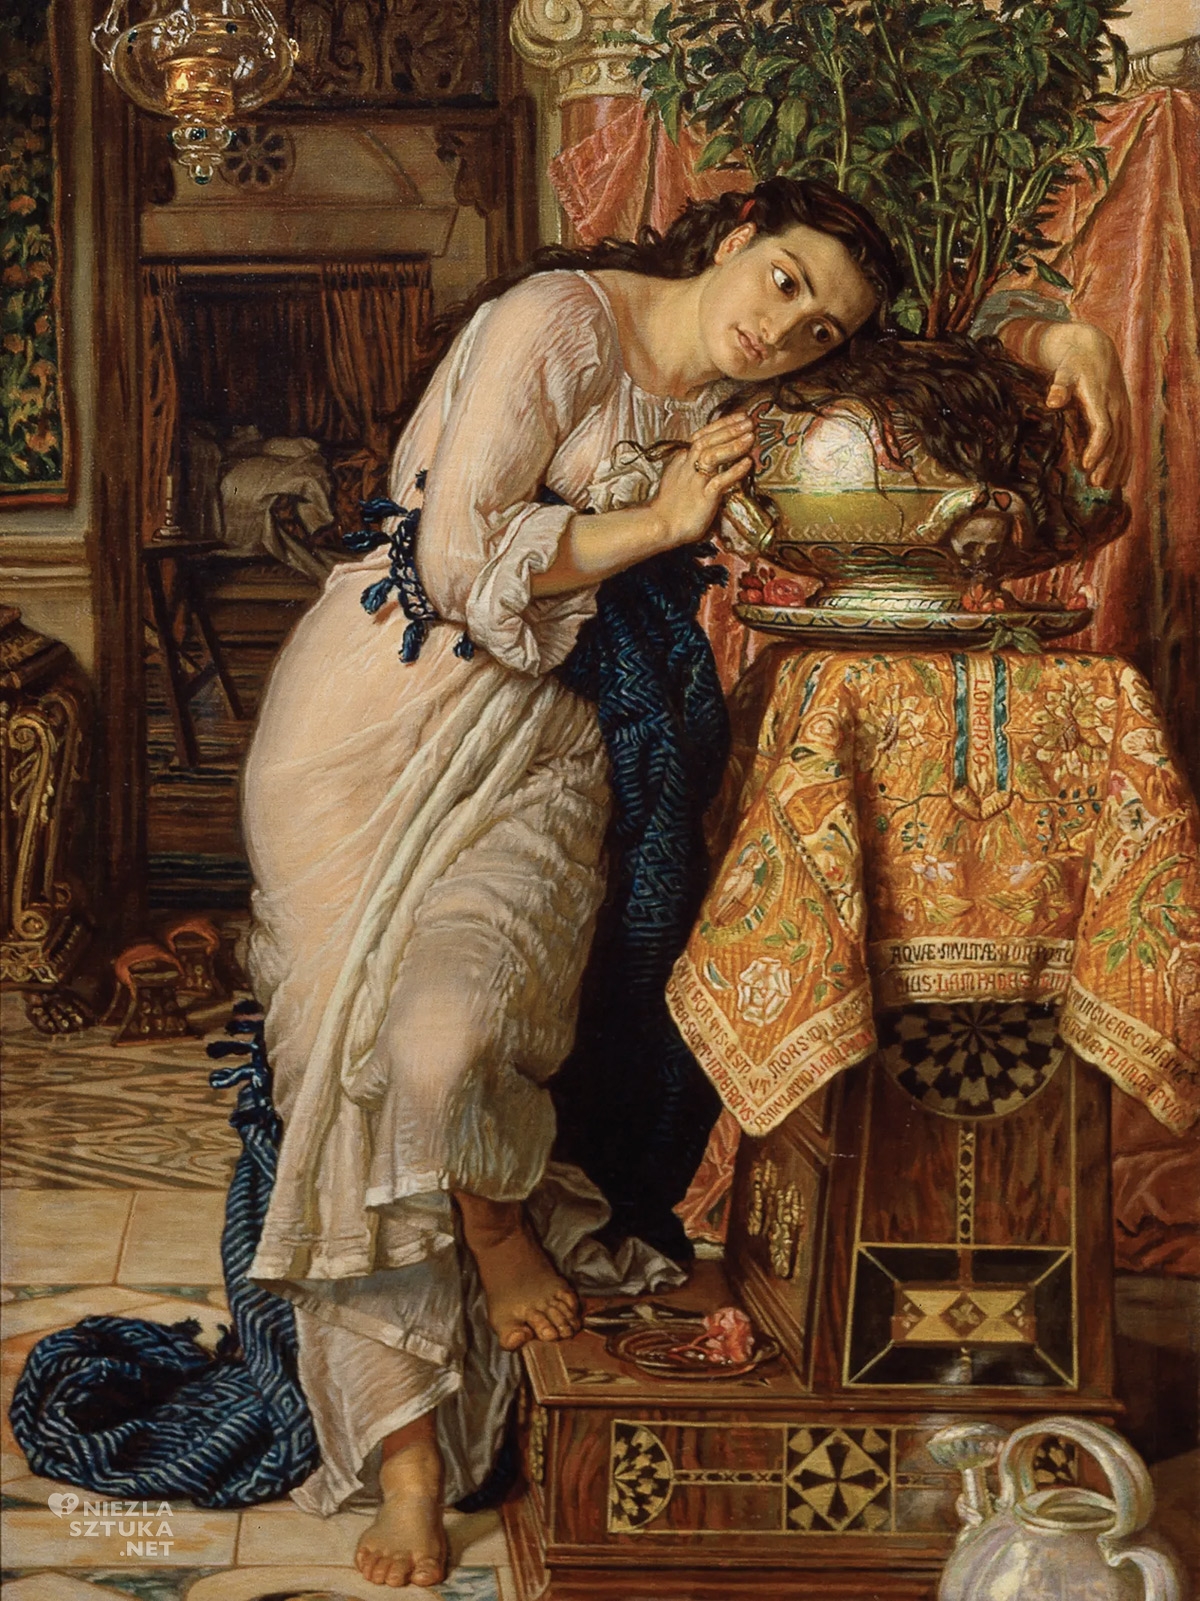 William Hunt, Isabella i donica bazylii, prerafaelici, vanitas, niezła sztuka